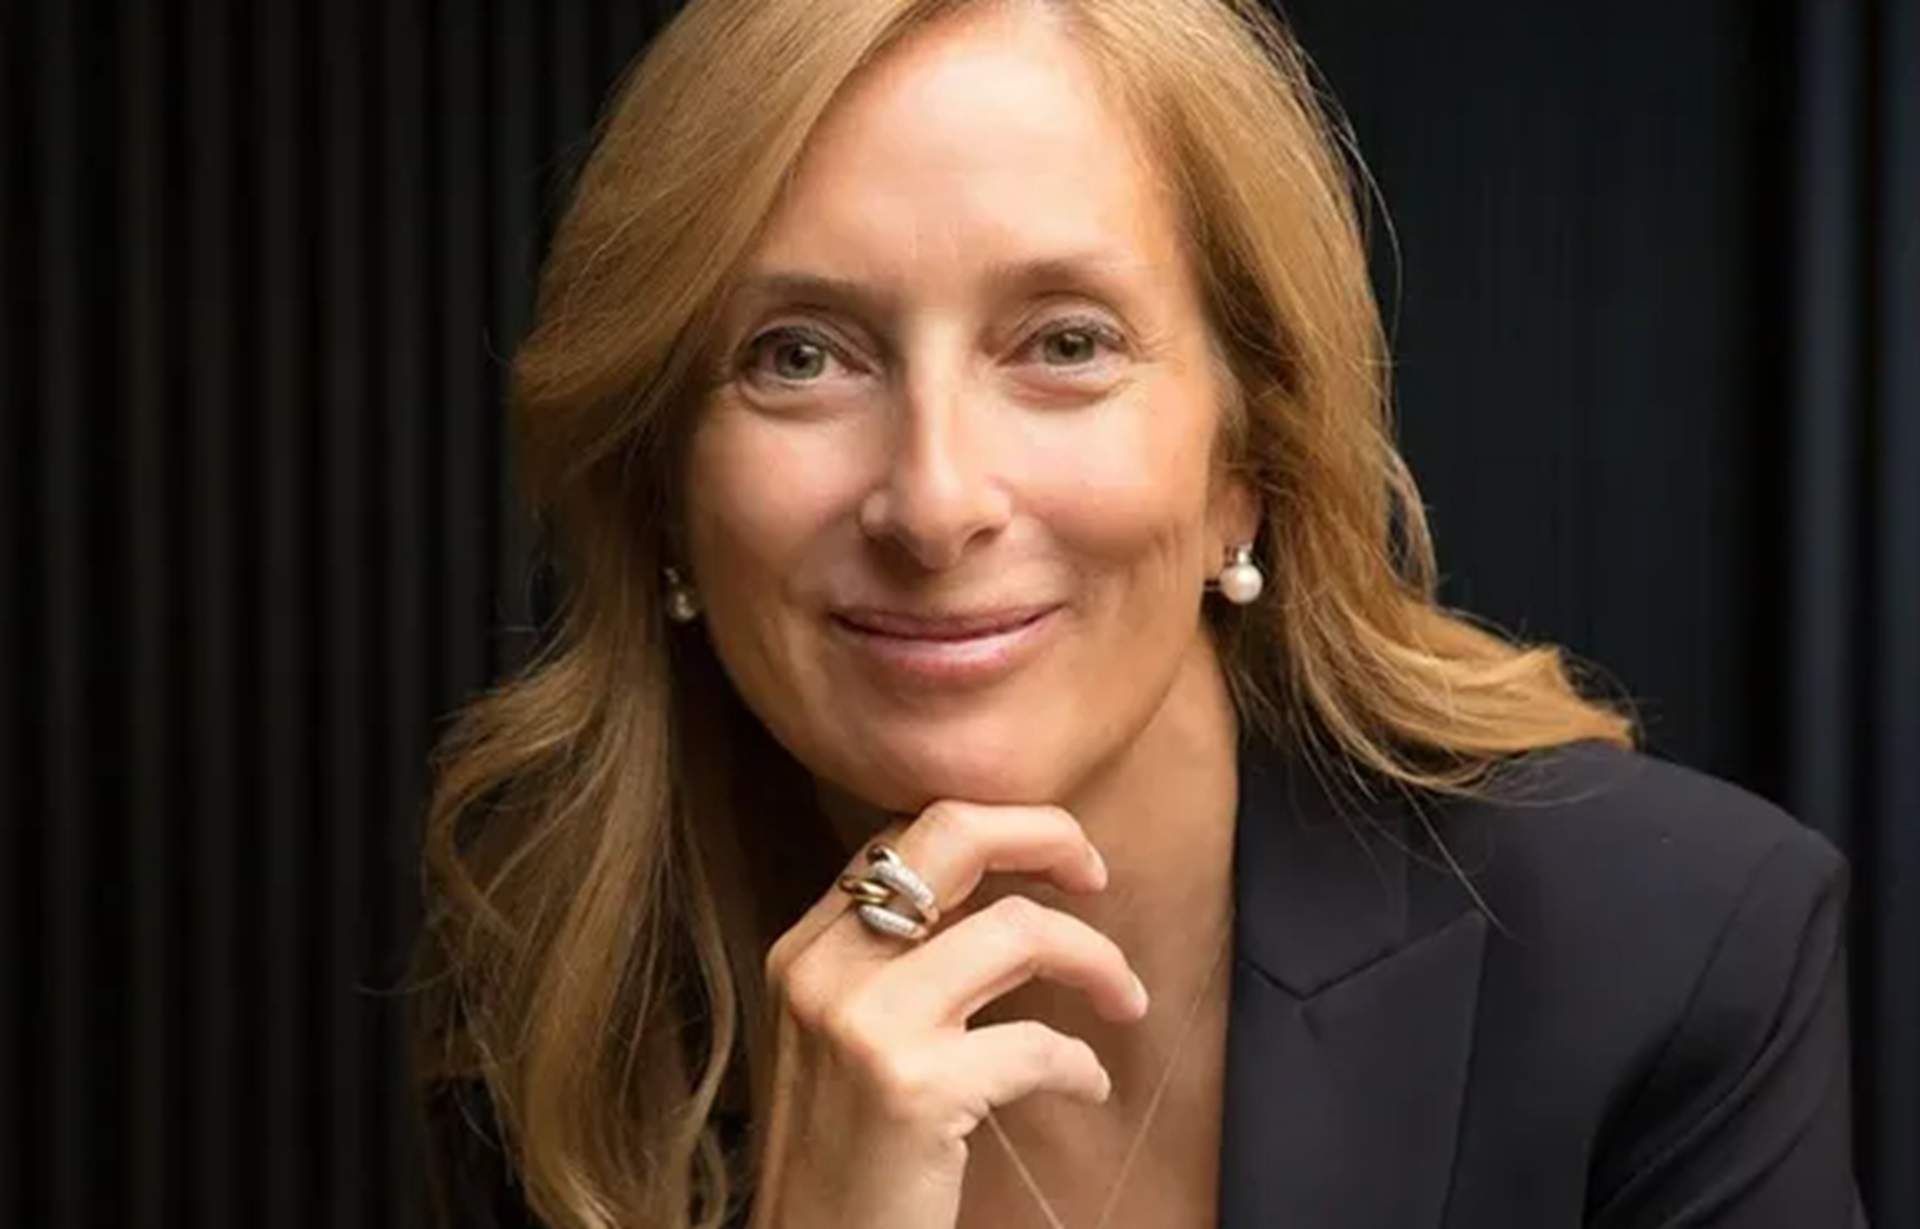 L'empresària Anna Navarro i Descals serà la número dos de Carles Puigdemont al 12-M